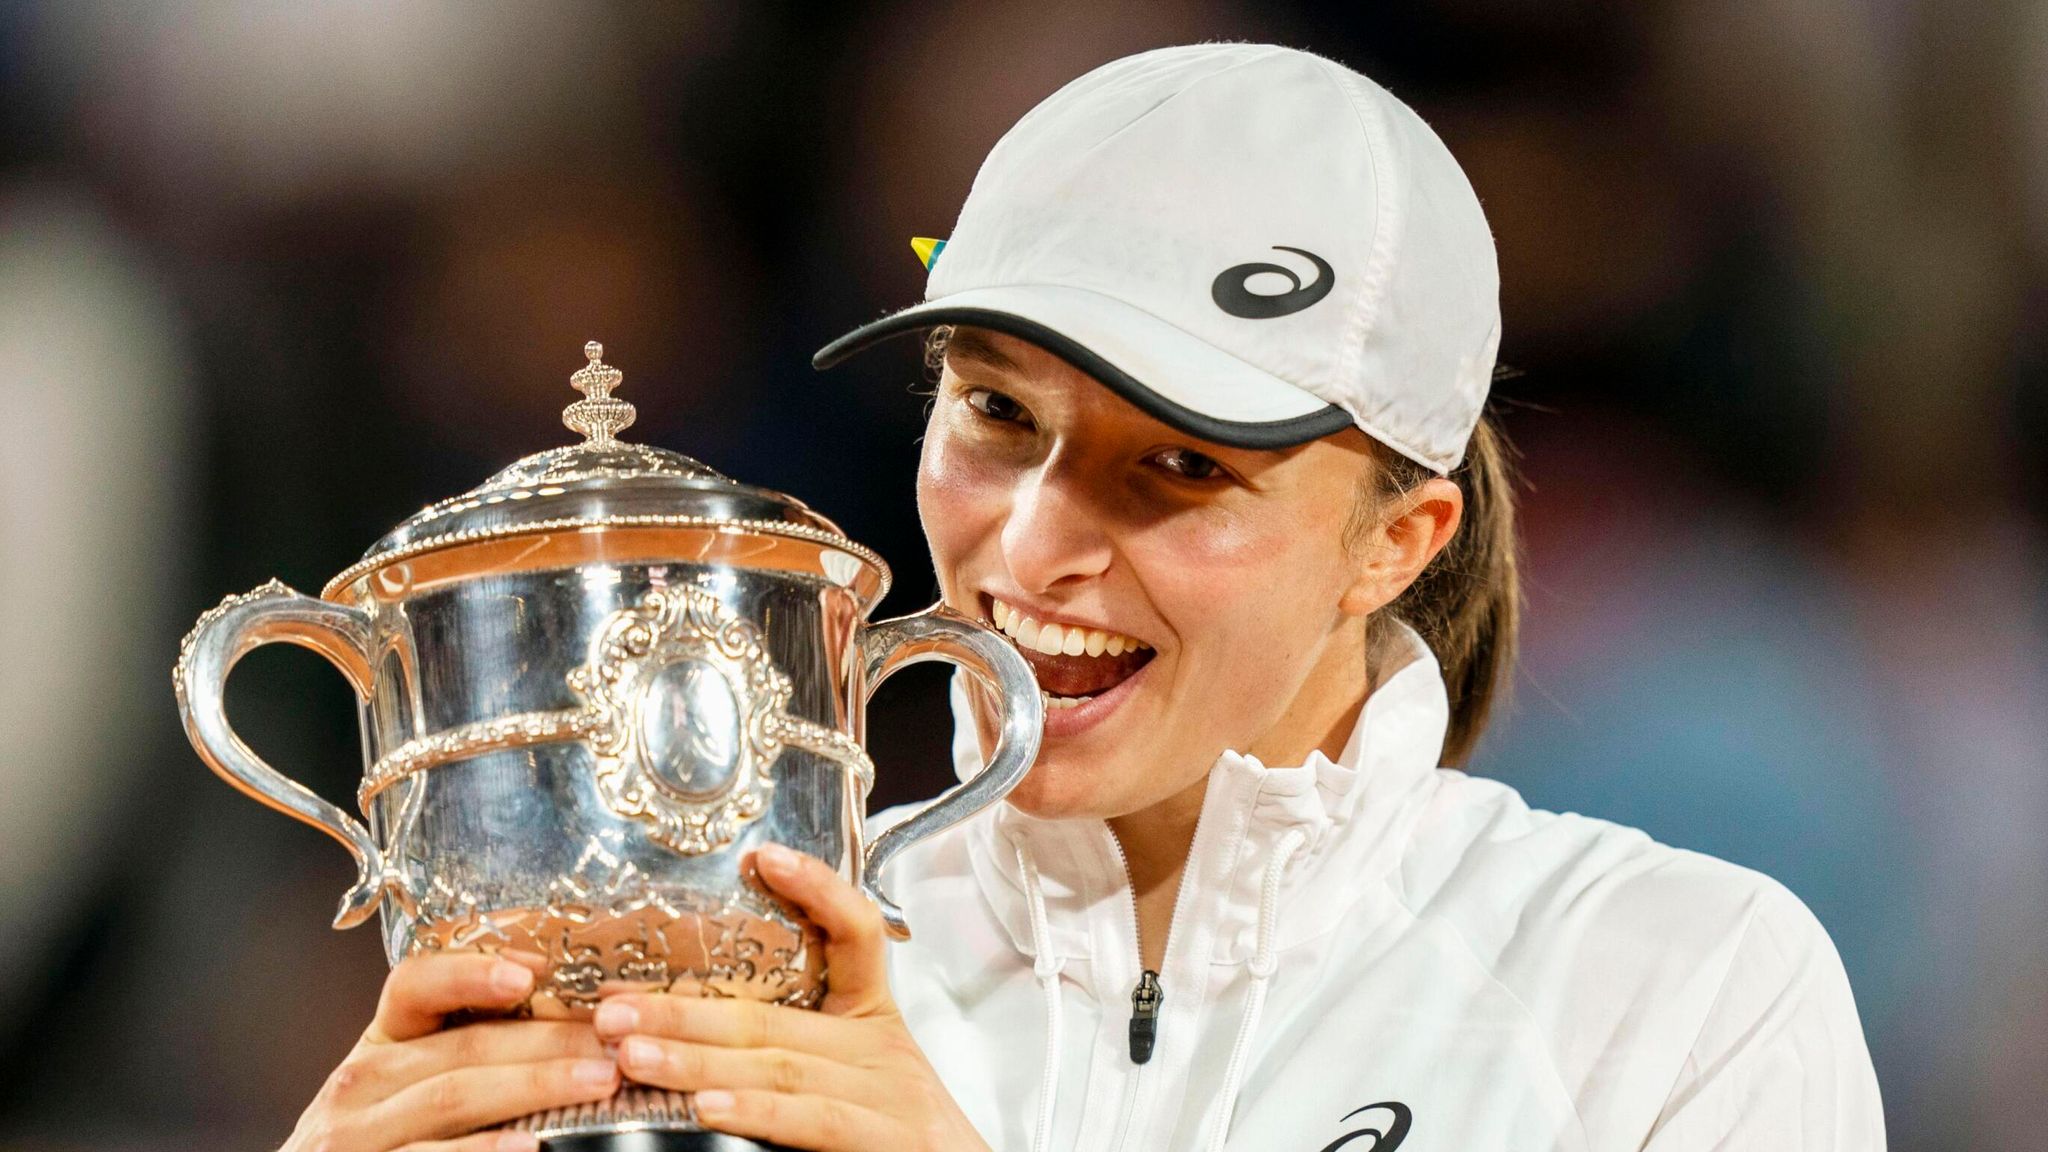 French Open 2023 Women's Draw including Iga Swiatek, Aryna Sabalenka